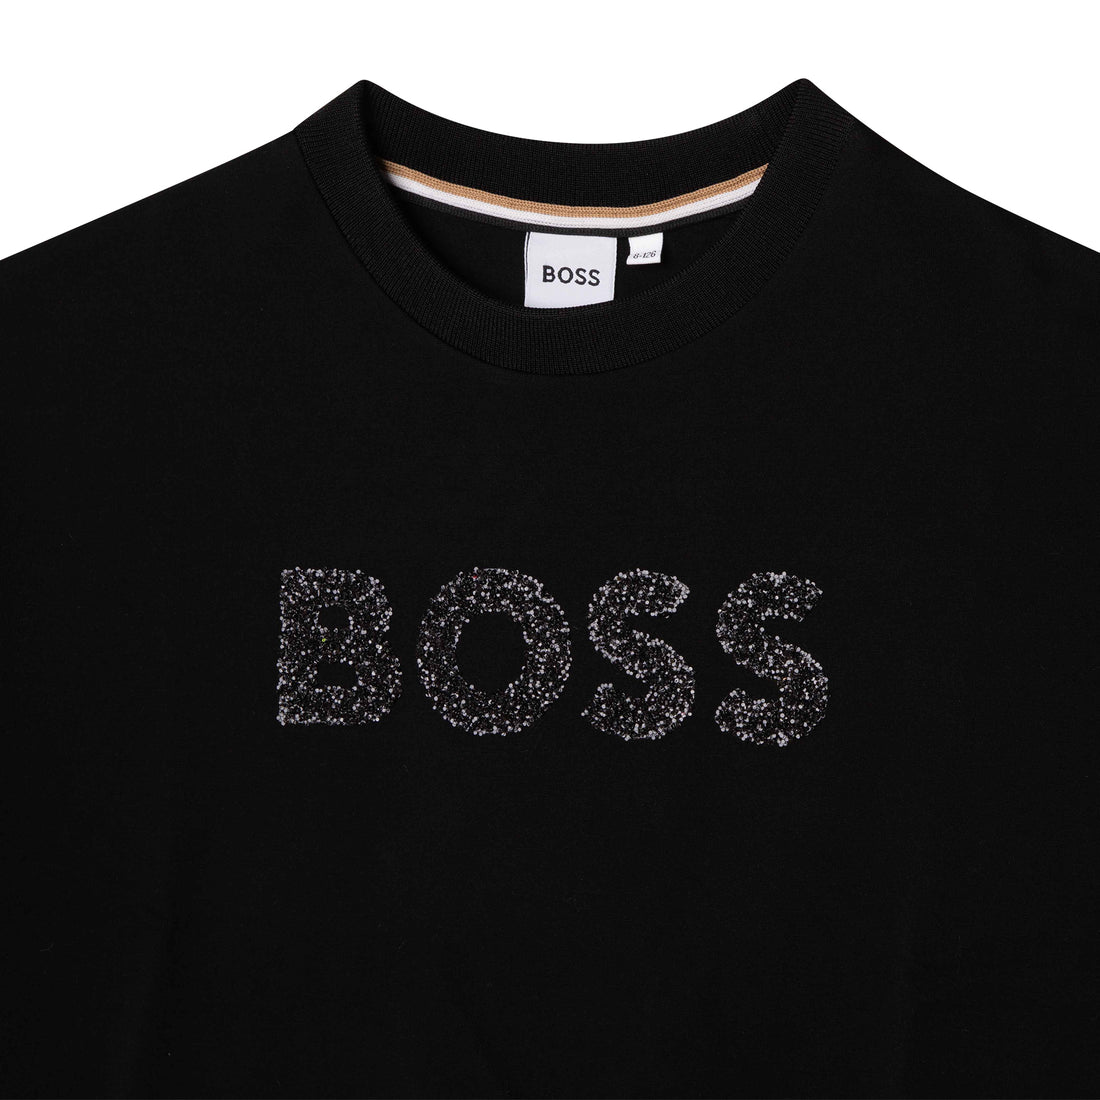 Boss Sweatshirt Style: J15464